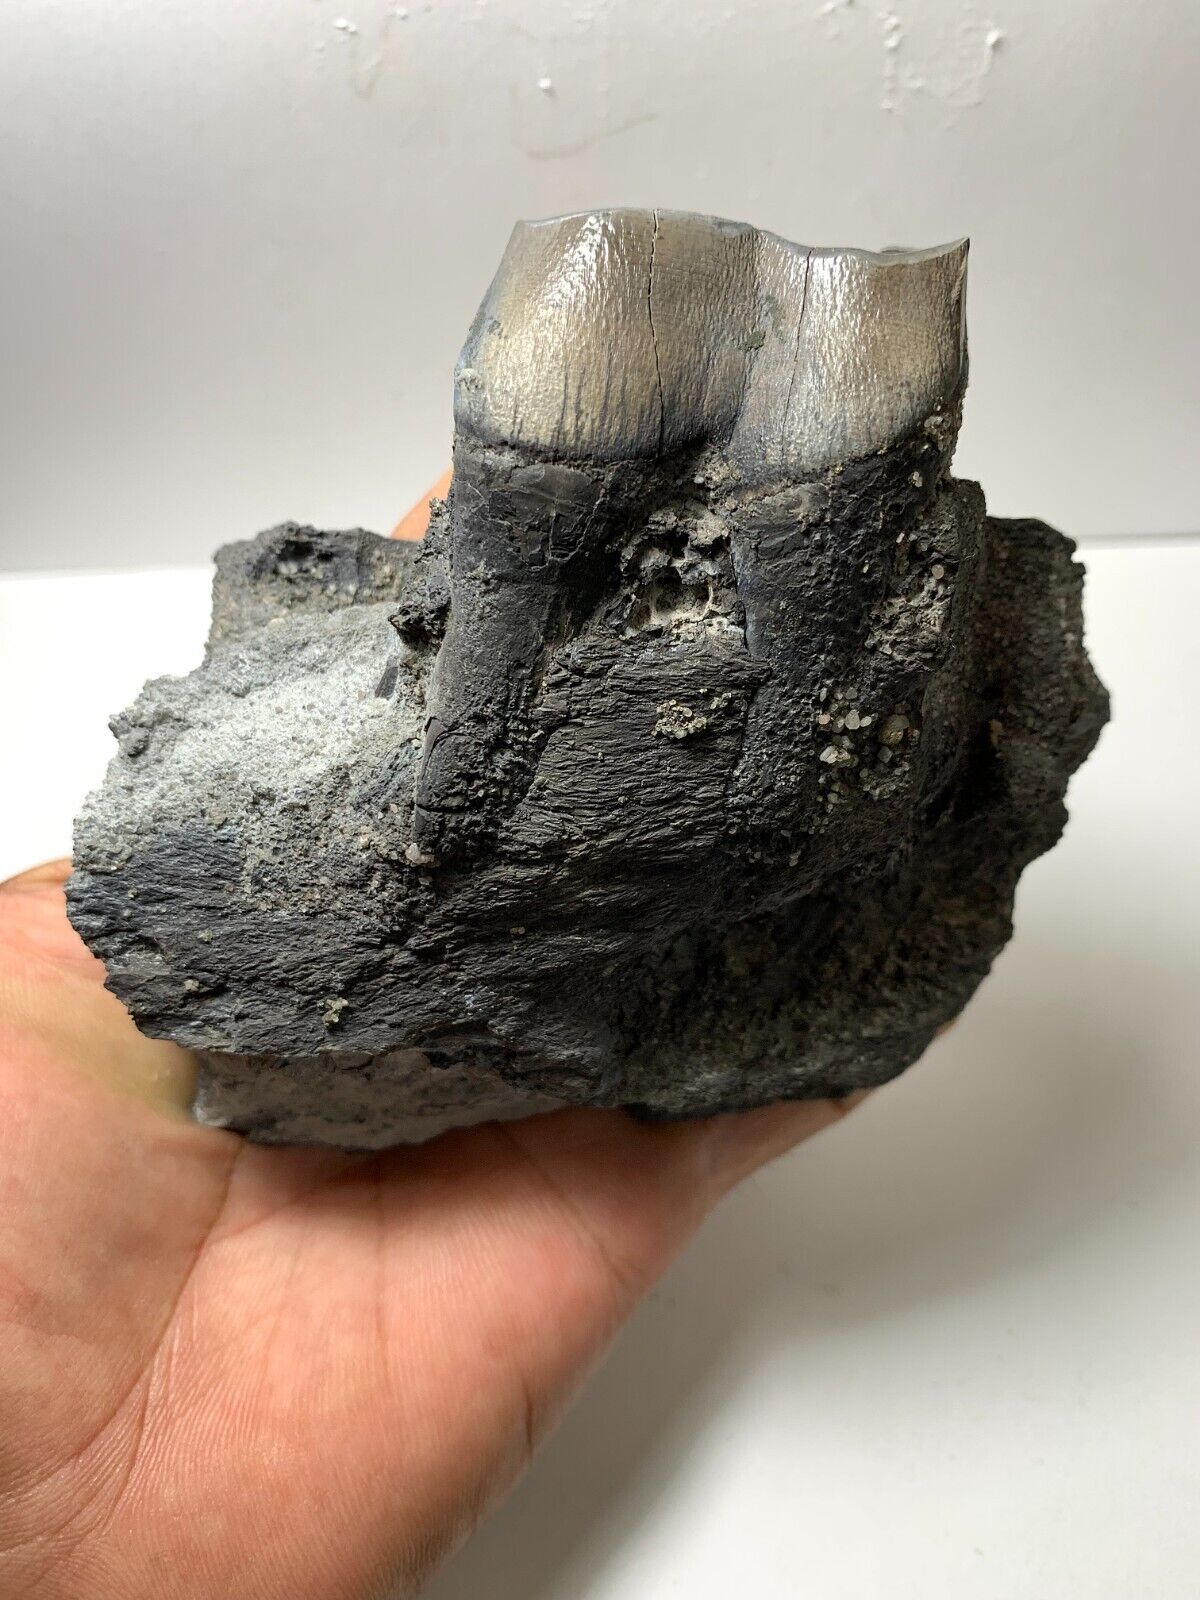 Aceratherium fossil jaw - tooth Extinct Rare Beautiful Amazing genuine